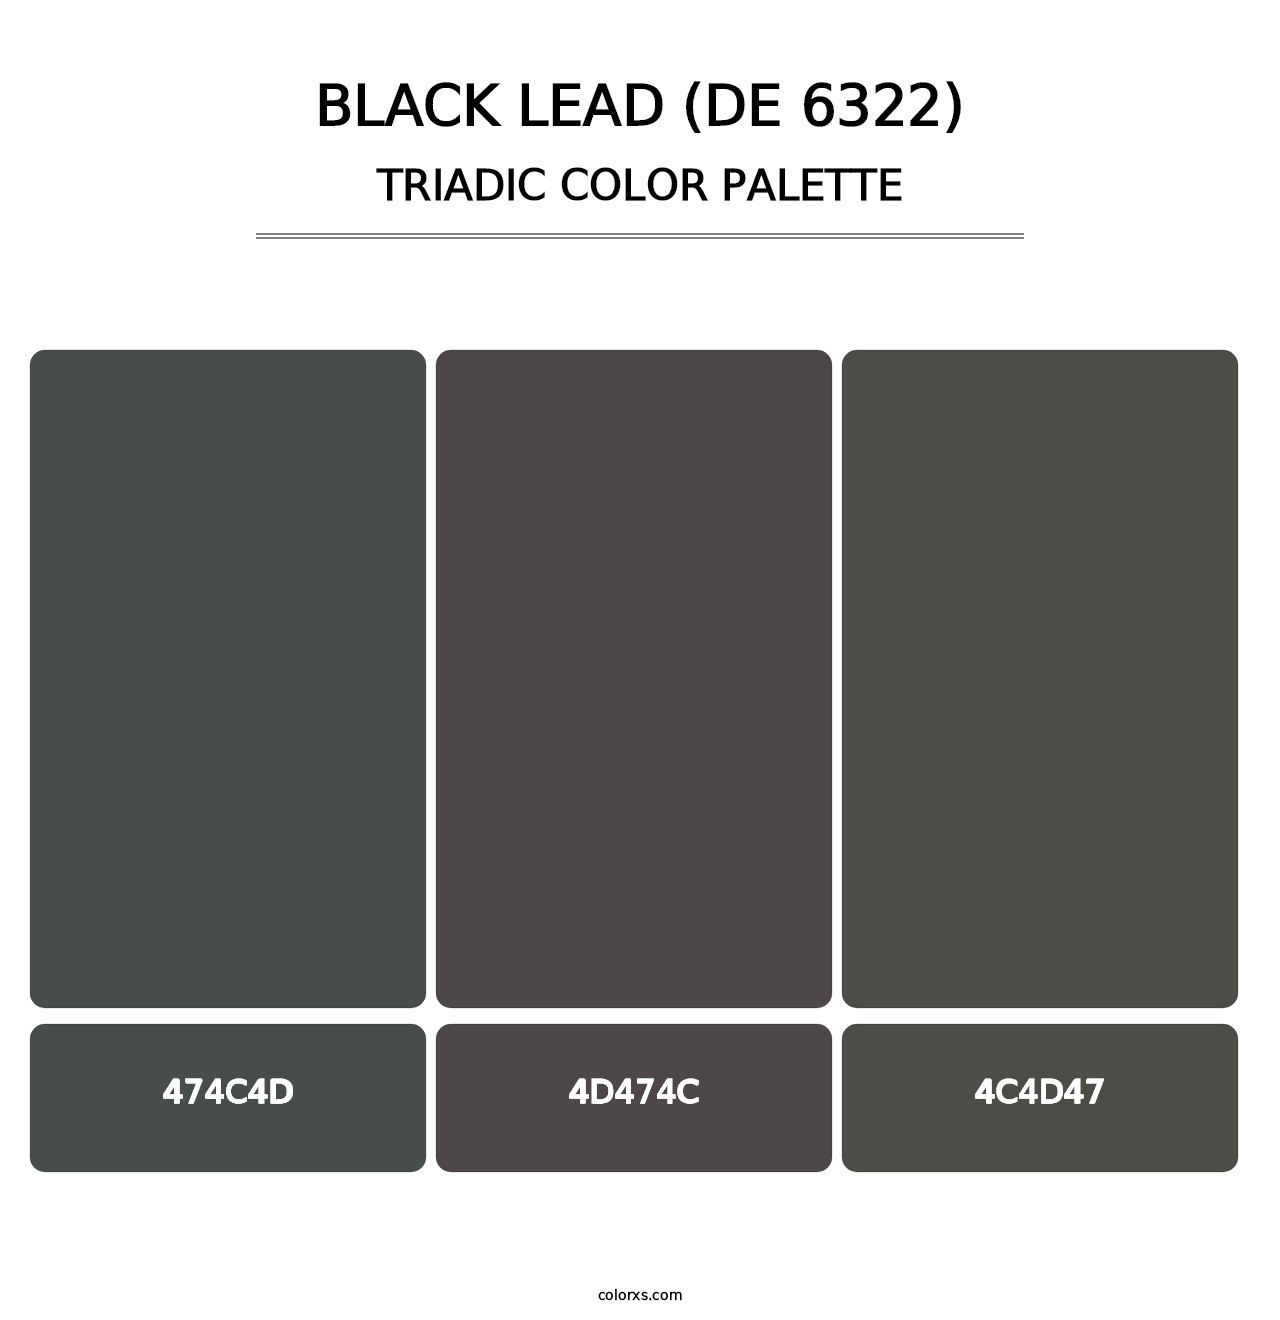 Black Lead (DE 6322) - Triadic Color Palette